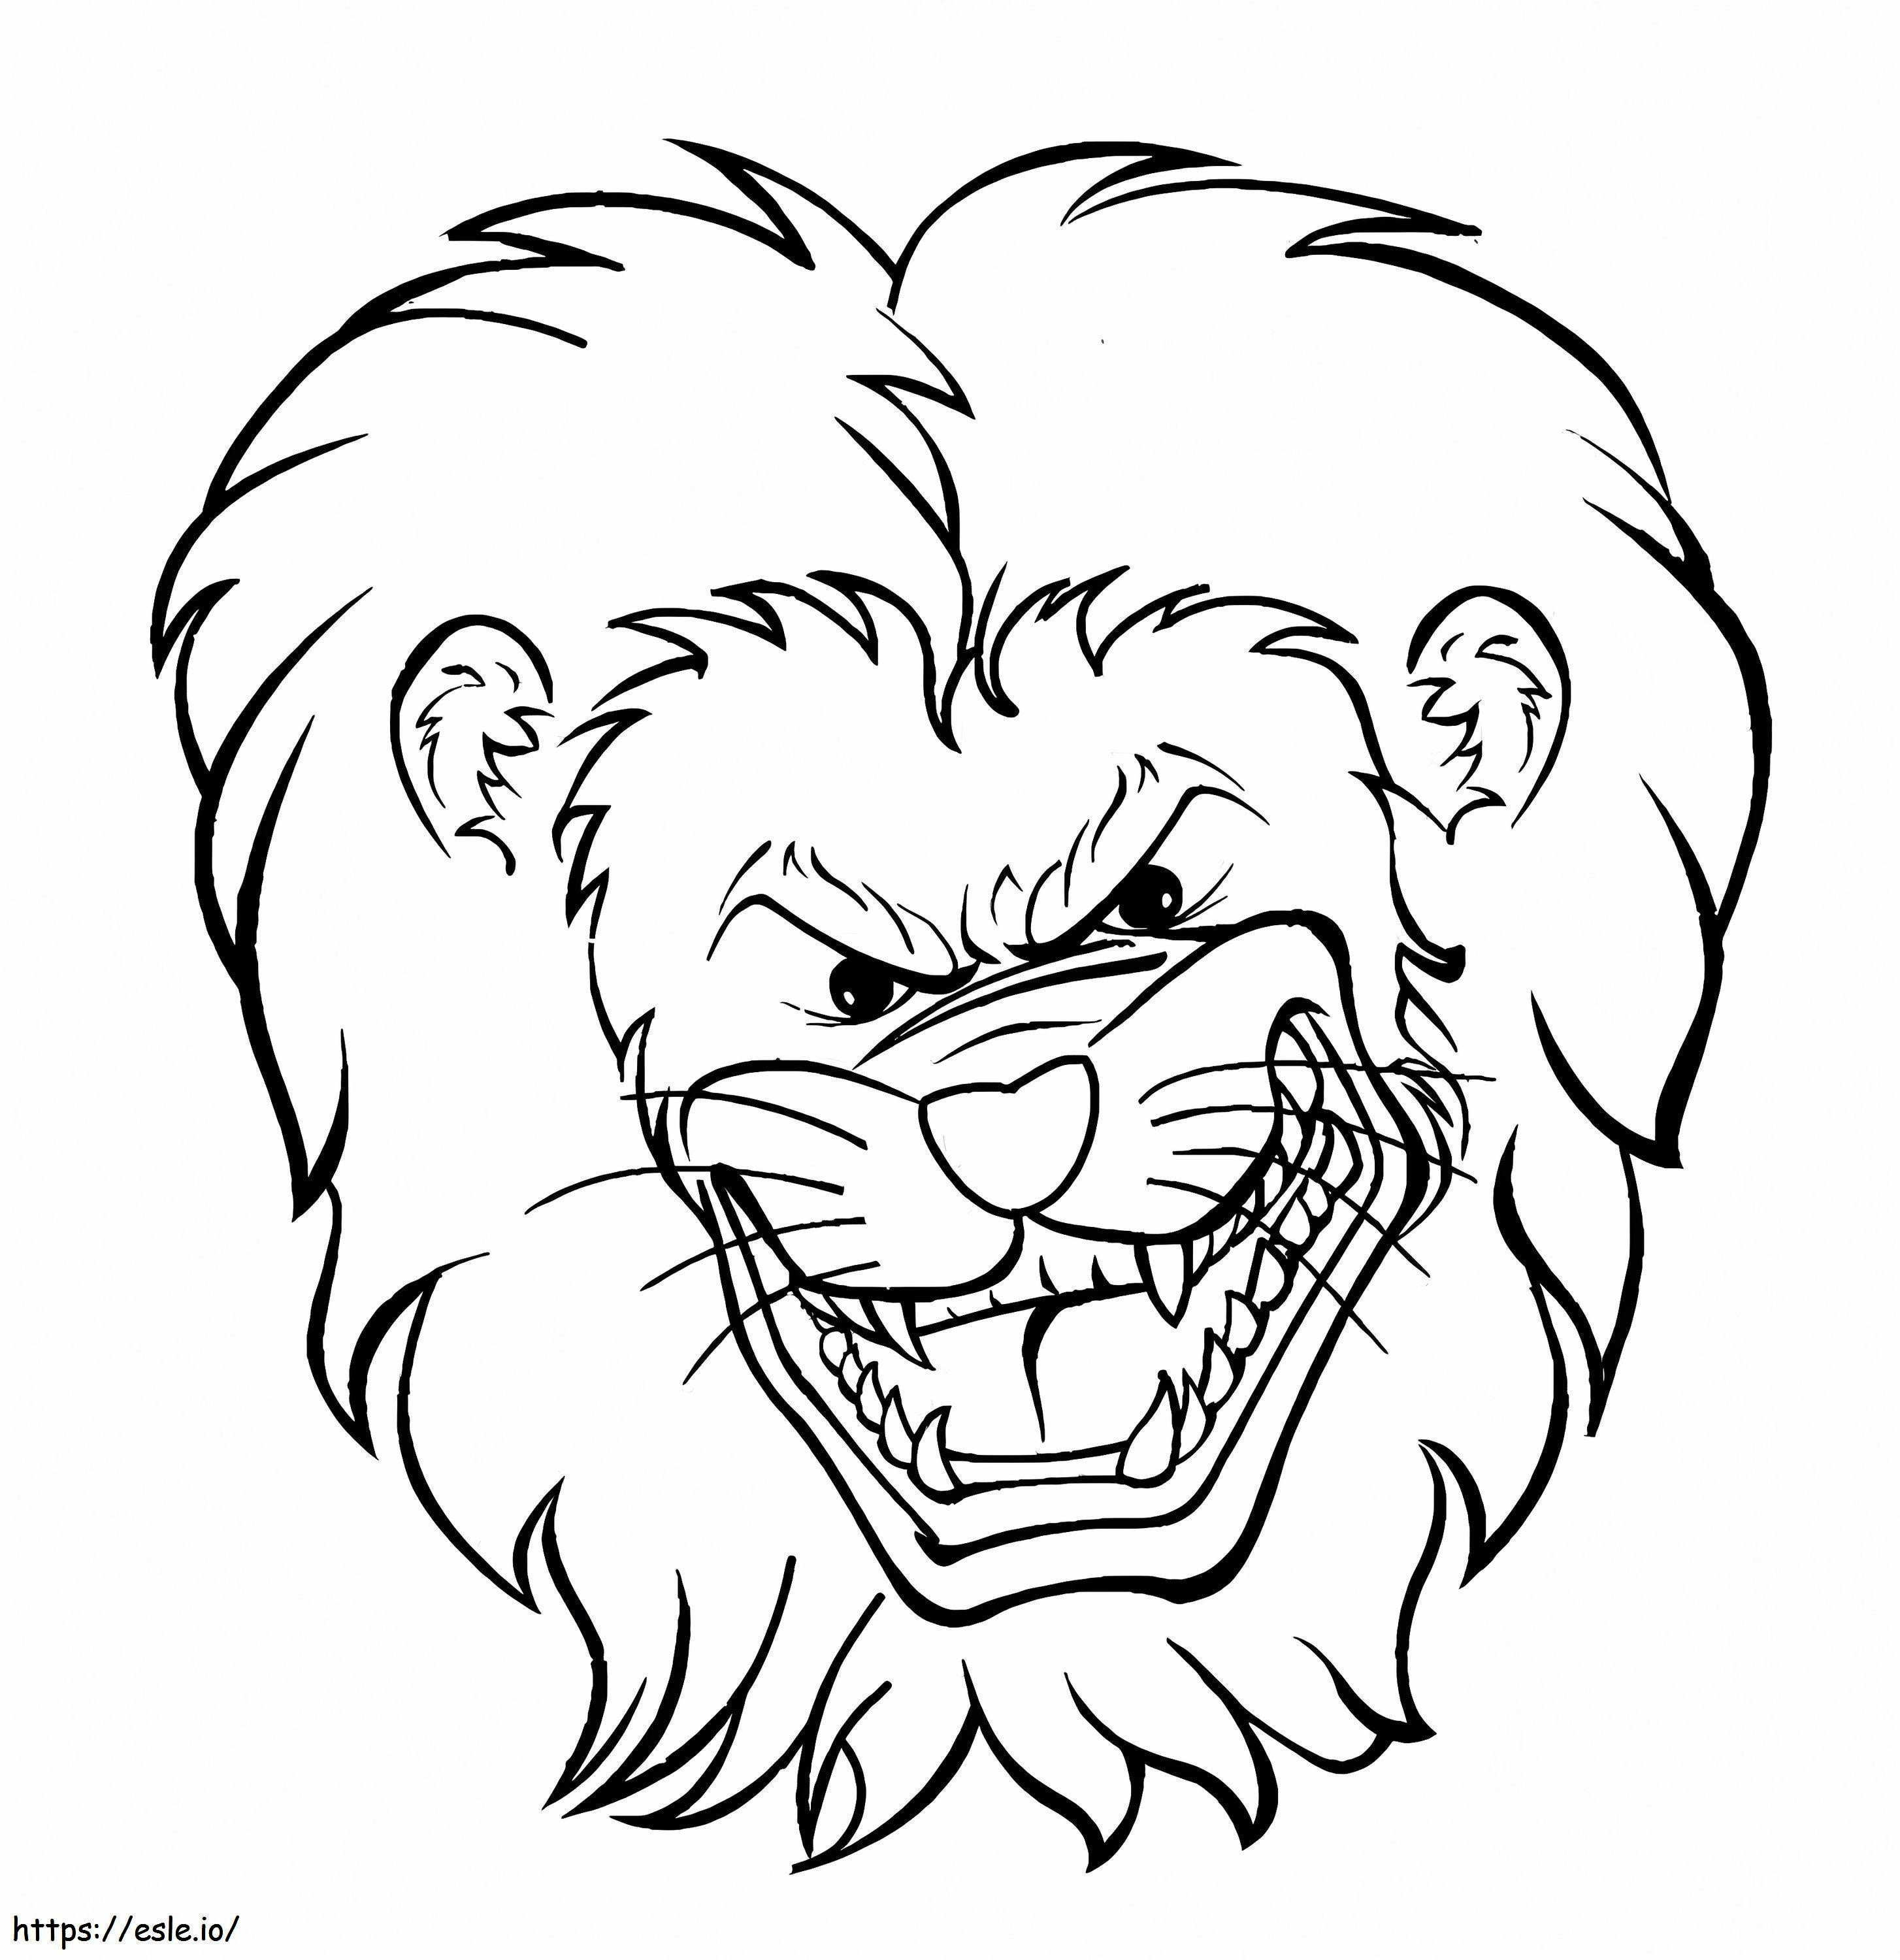 Cara de león enojado para colorear